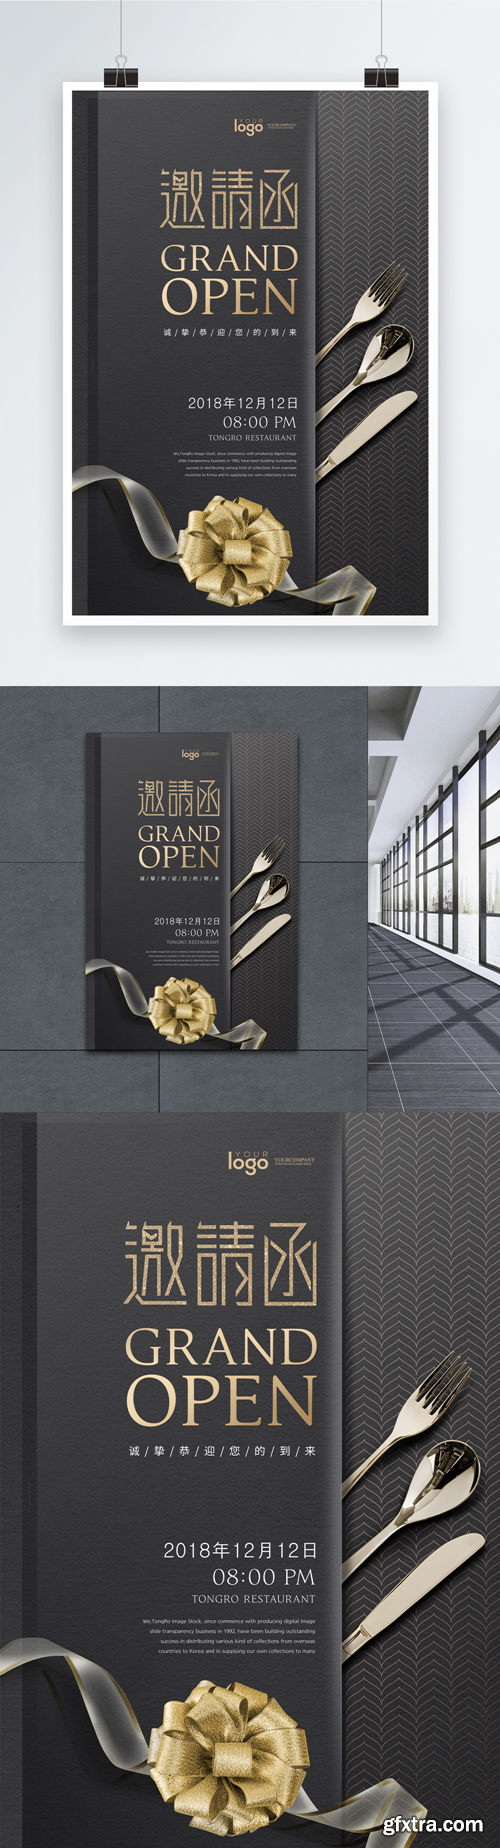 black gold premium invitation poster design